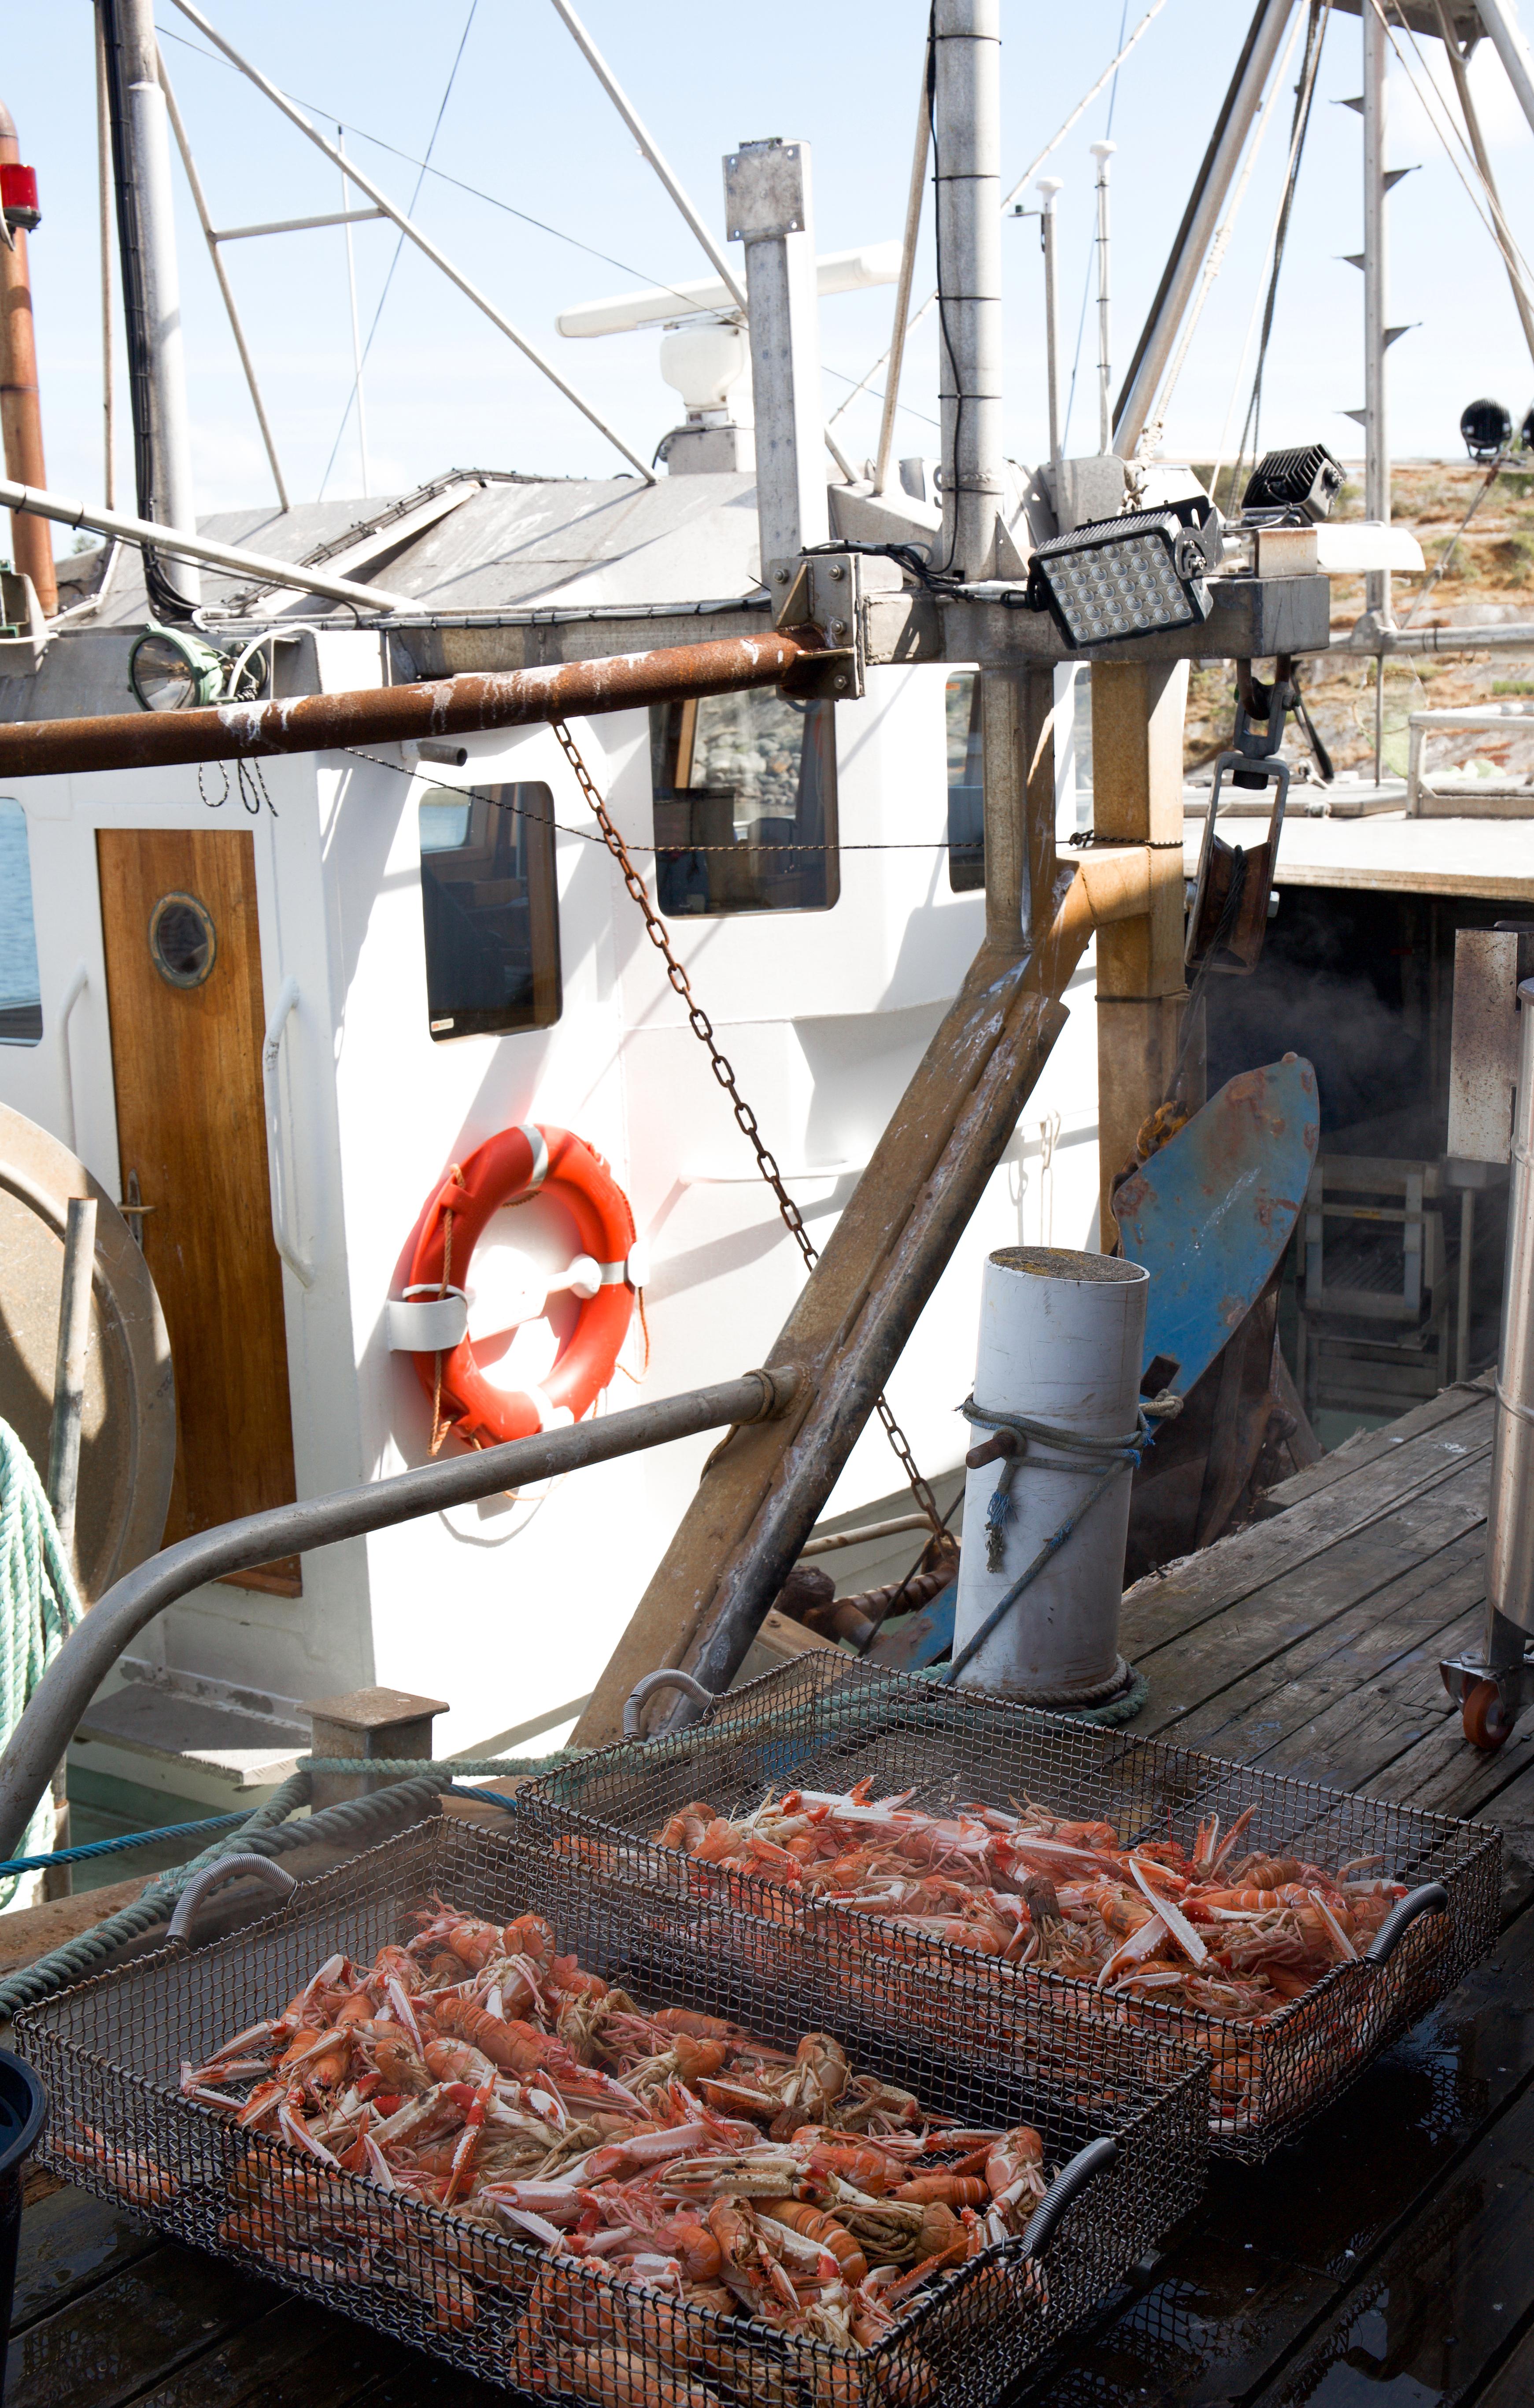 LOKALMAT: Ved havnen i Ekenäs kokes dagens fangst i store gryter. «Kräftor» kan kjøpes på stedet til en snill sum. 